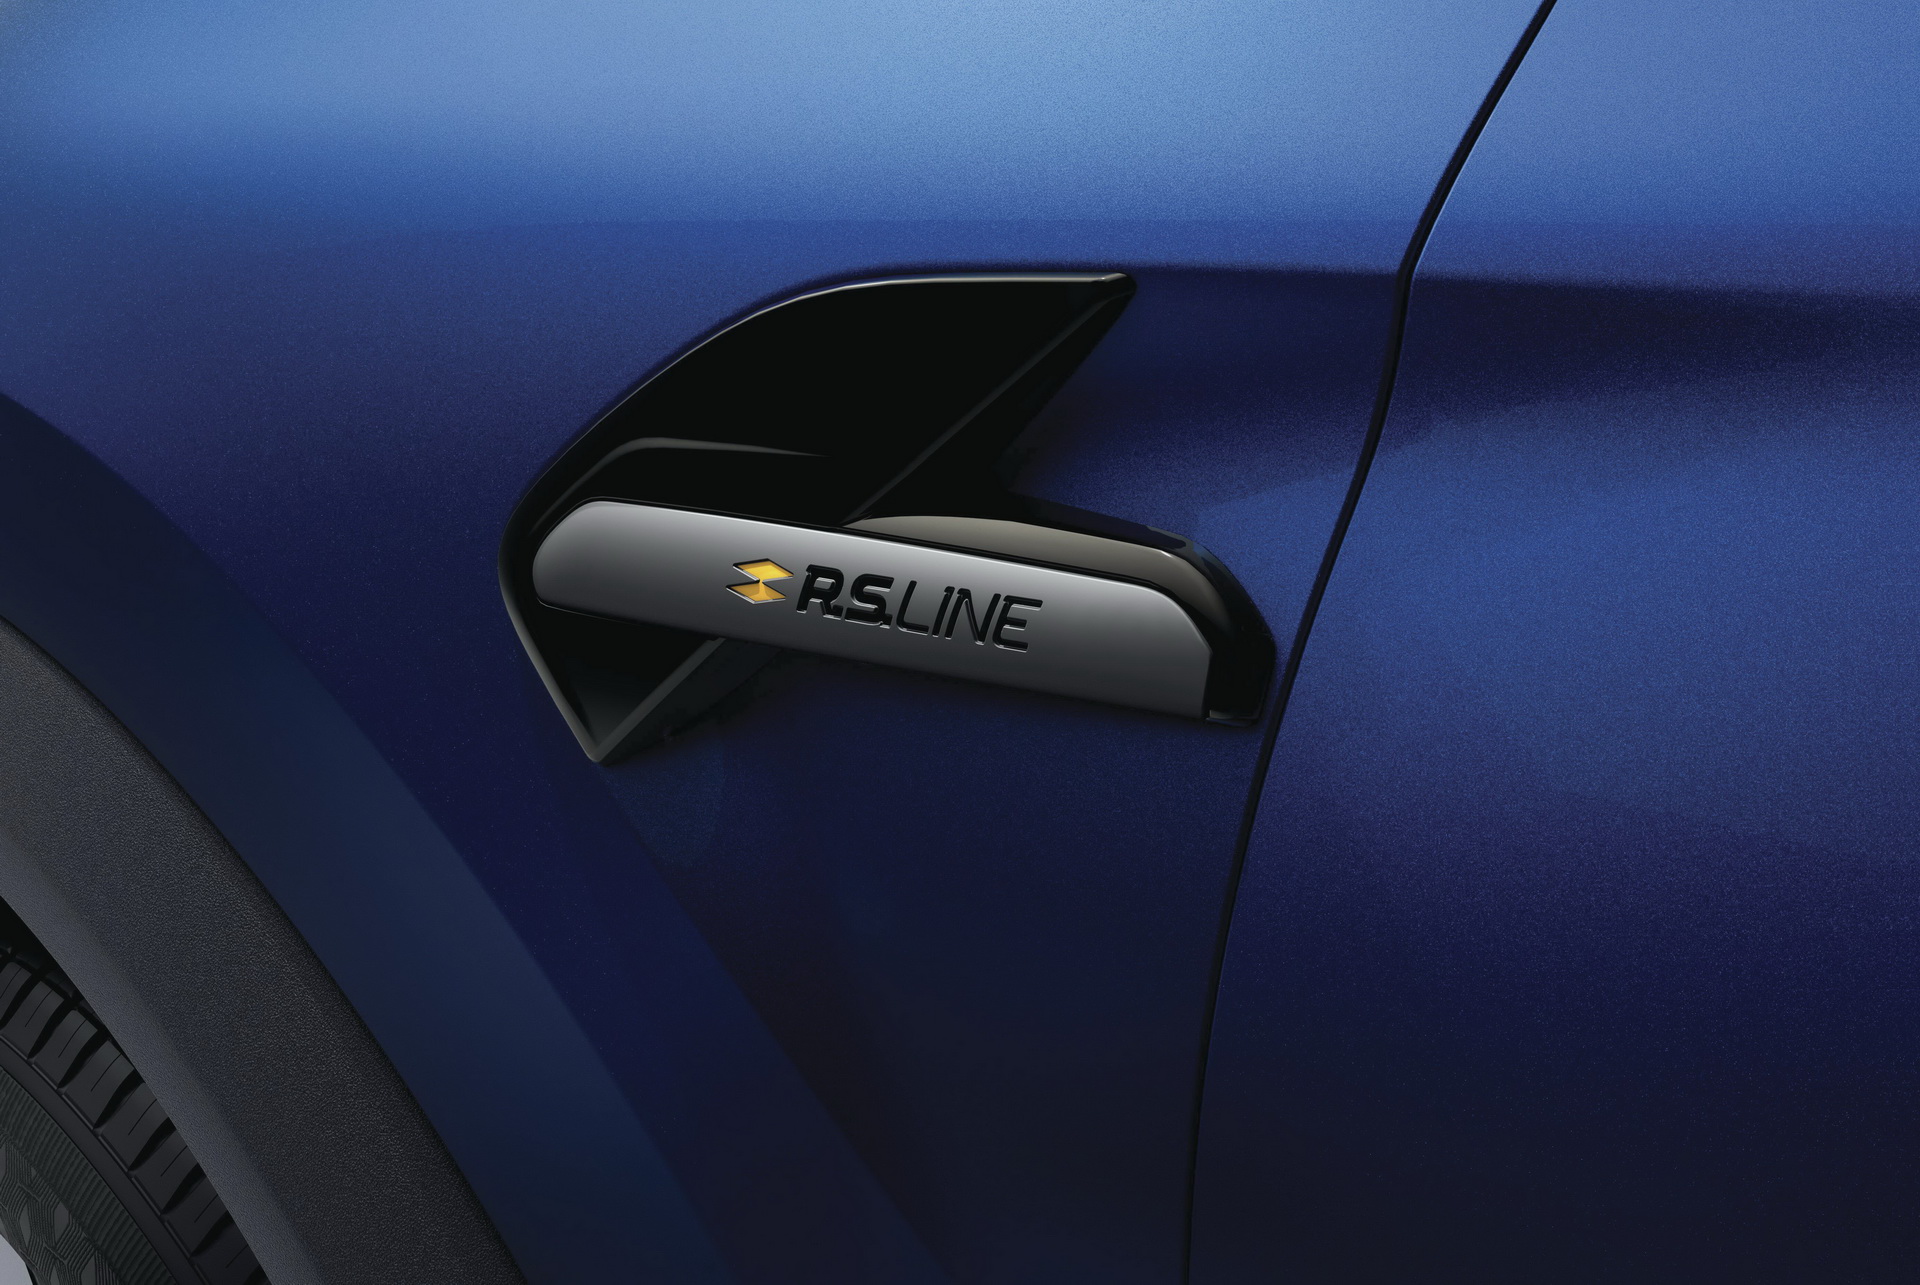 2021 Renault Captur R.S. Line resim galerisi (14.02.2021)